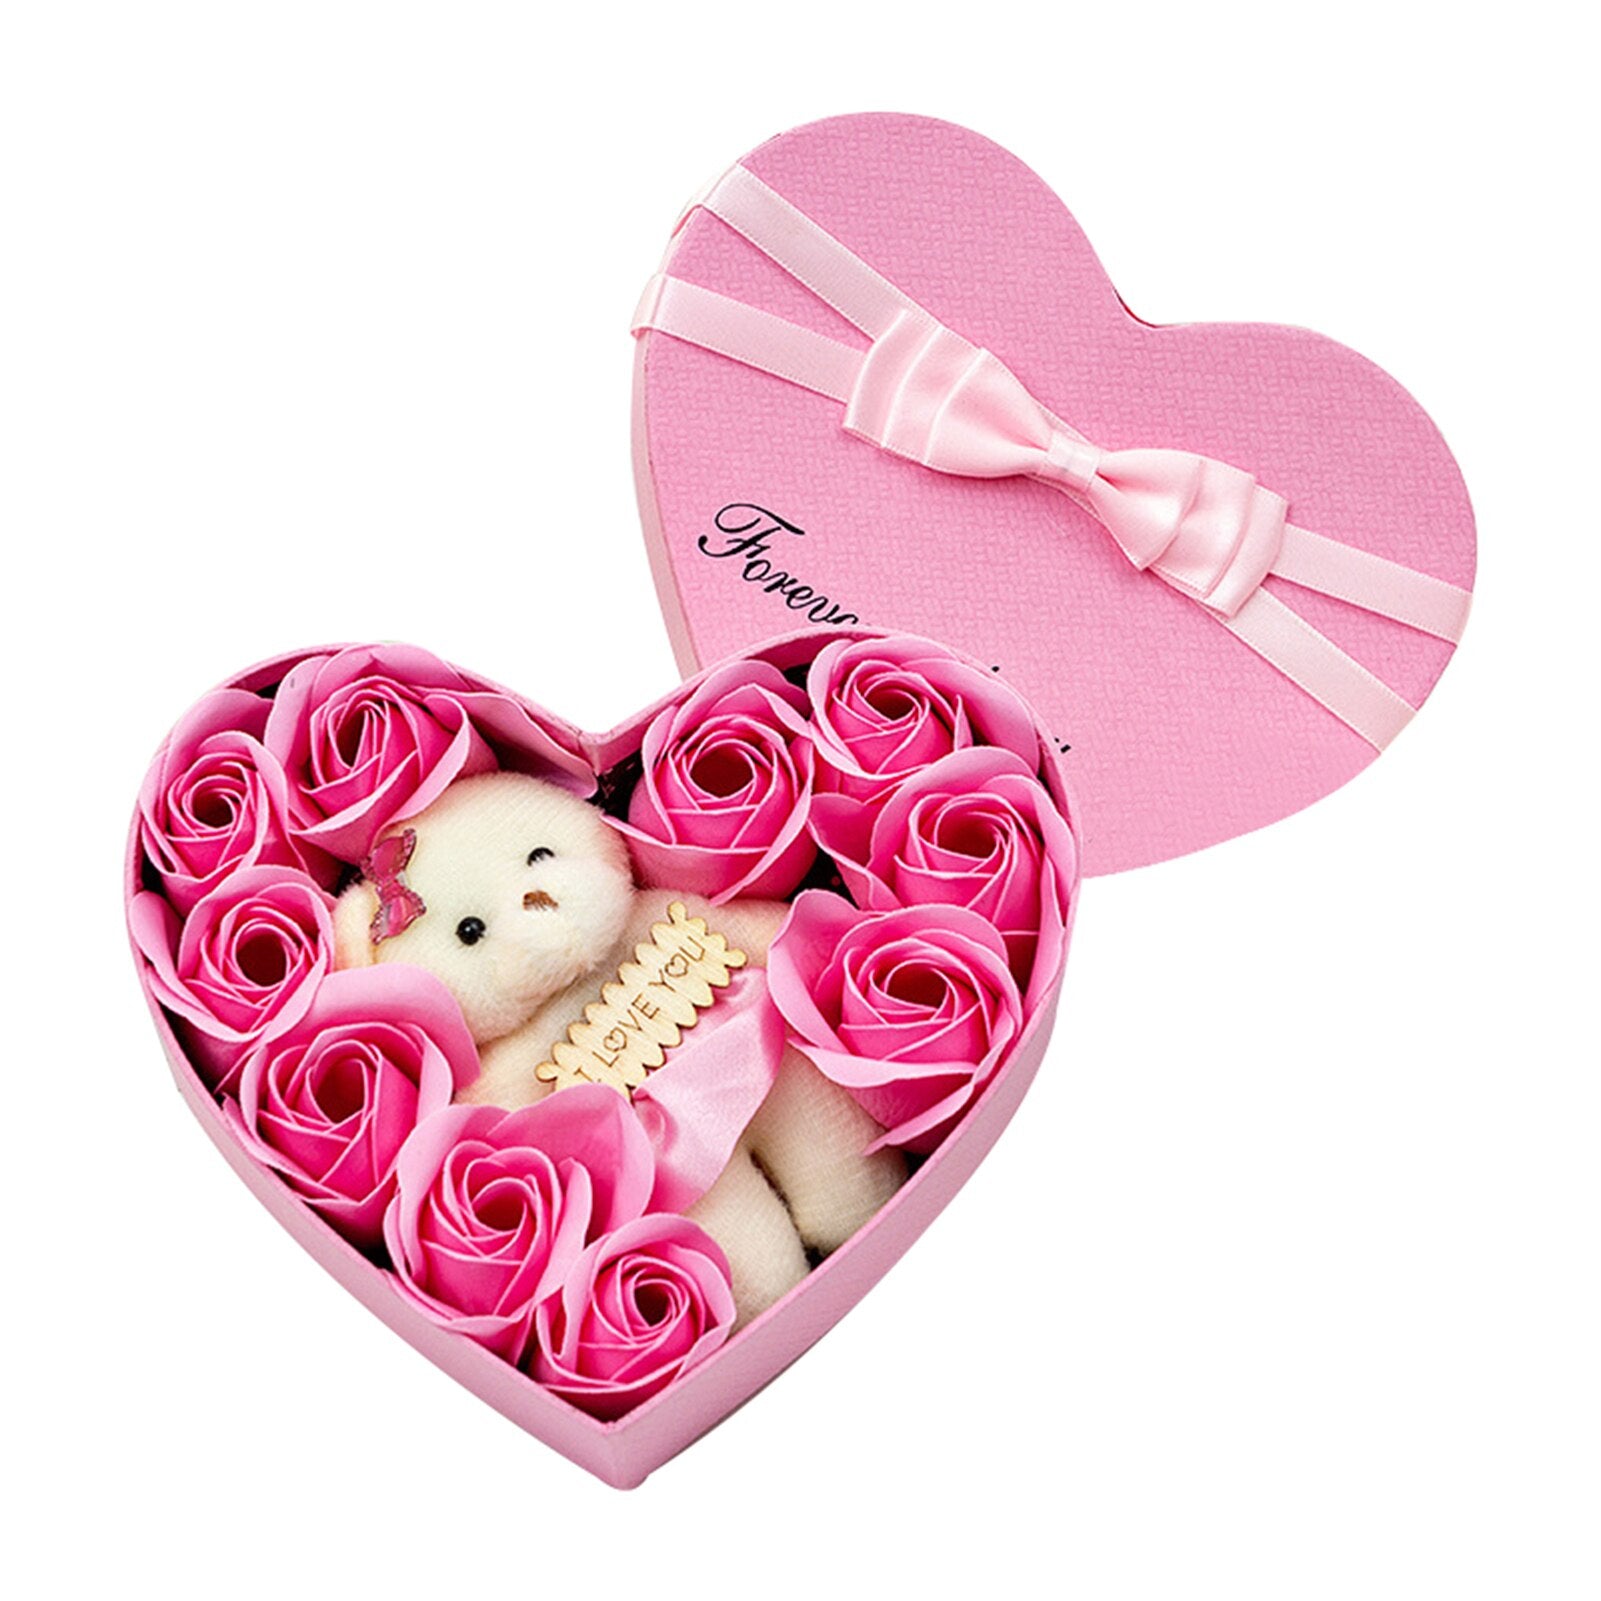 Heart Gift Box - Nailah Renae